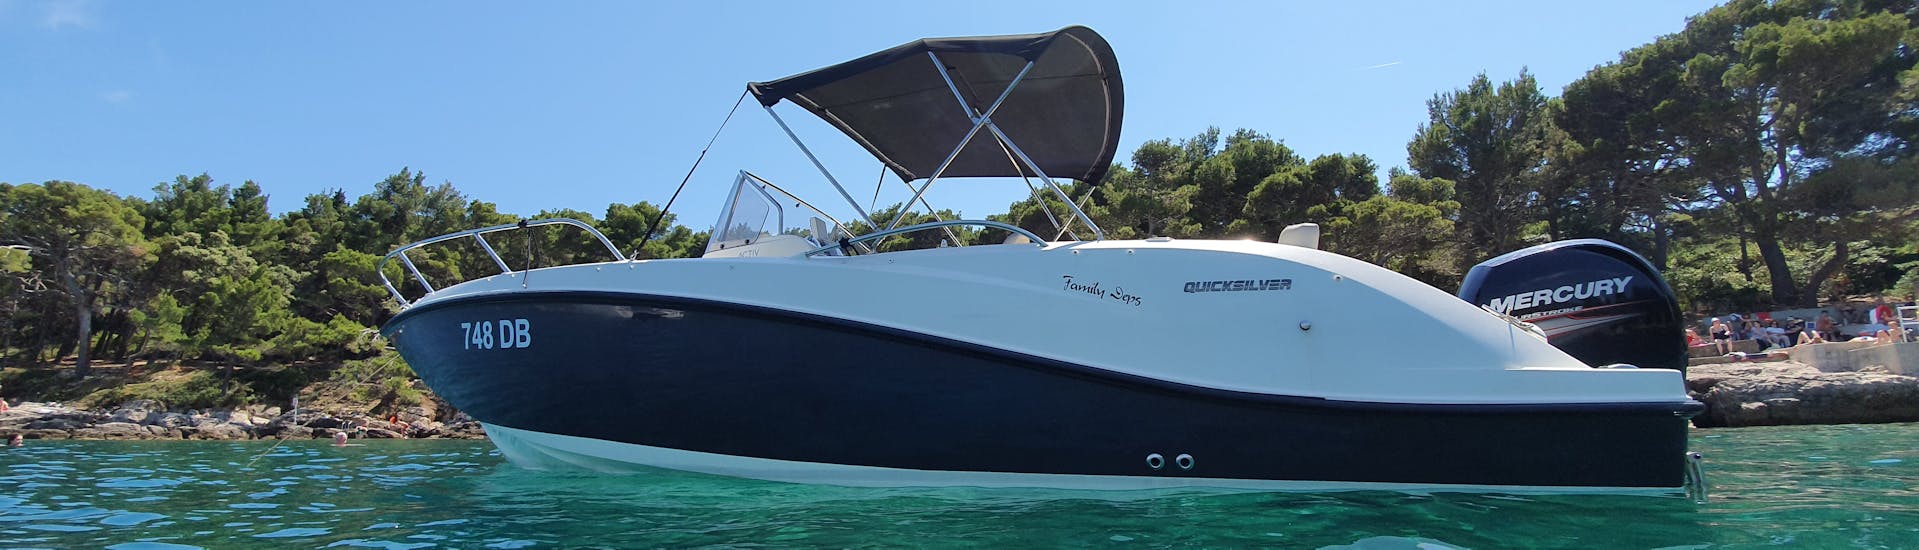 Notre bateau est sur l'eau et prêt à vous accueillir pendant l'excursion en bateau privé (6 pax) vers les îles Elaphiti avec plongée en apnée avec Explore Dubrovnik by Boat.